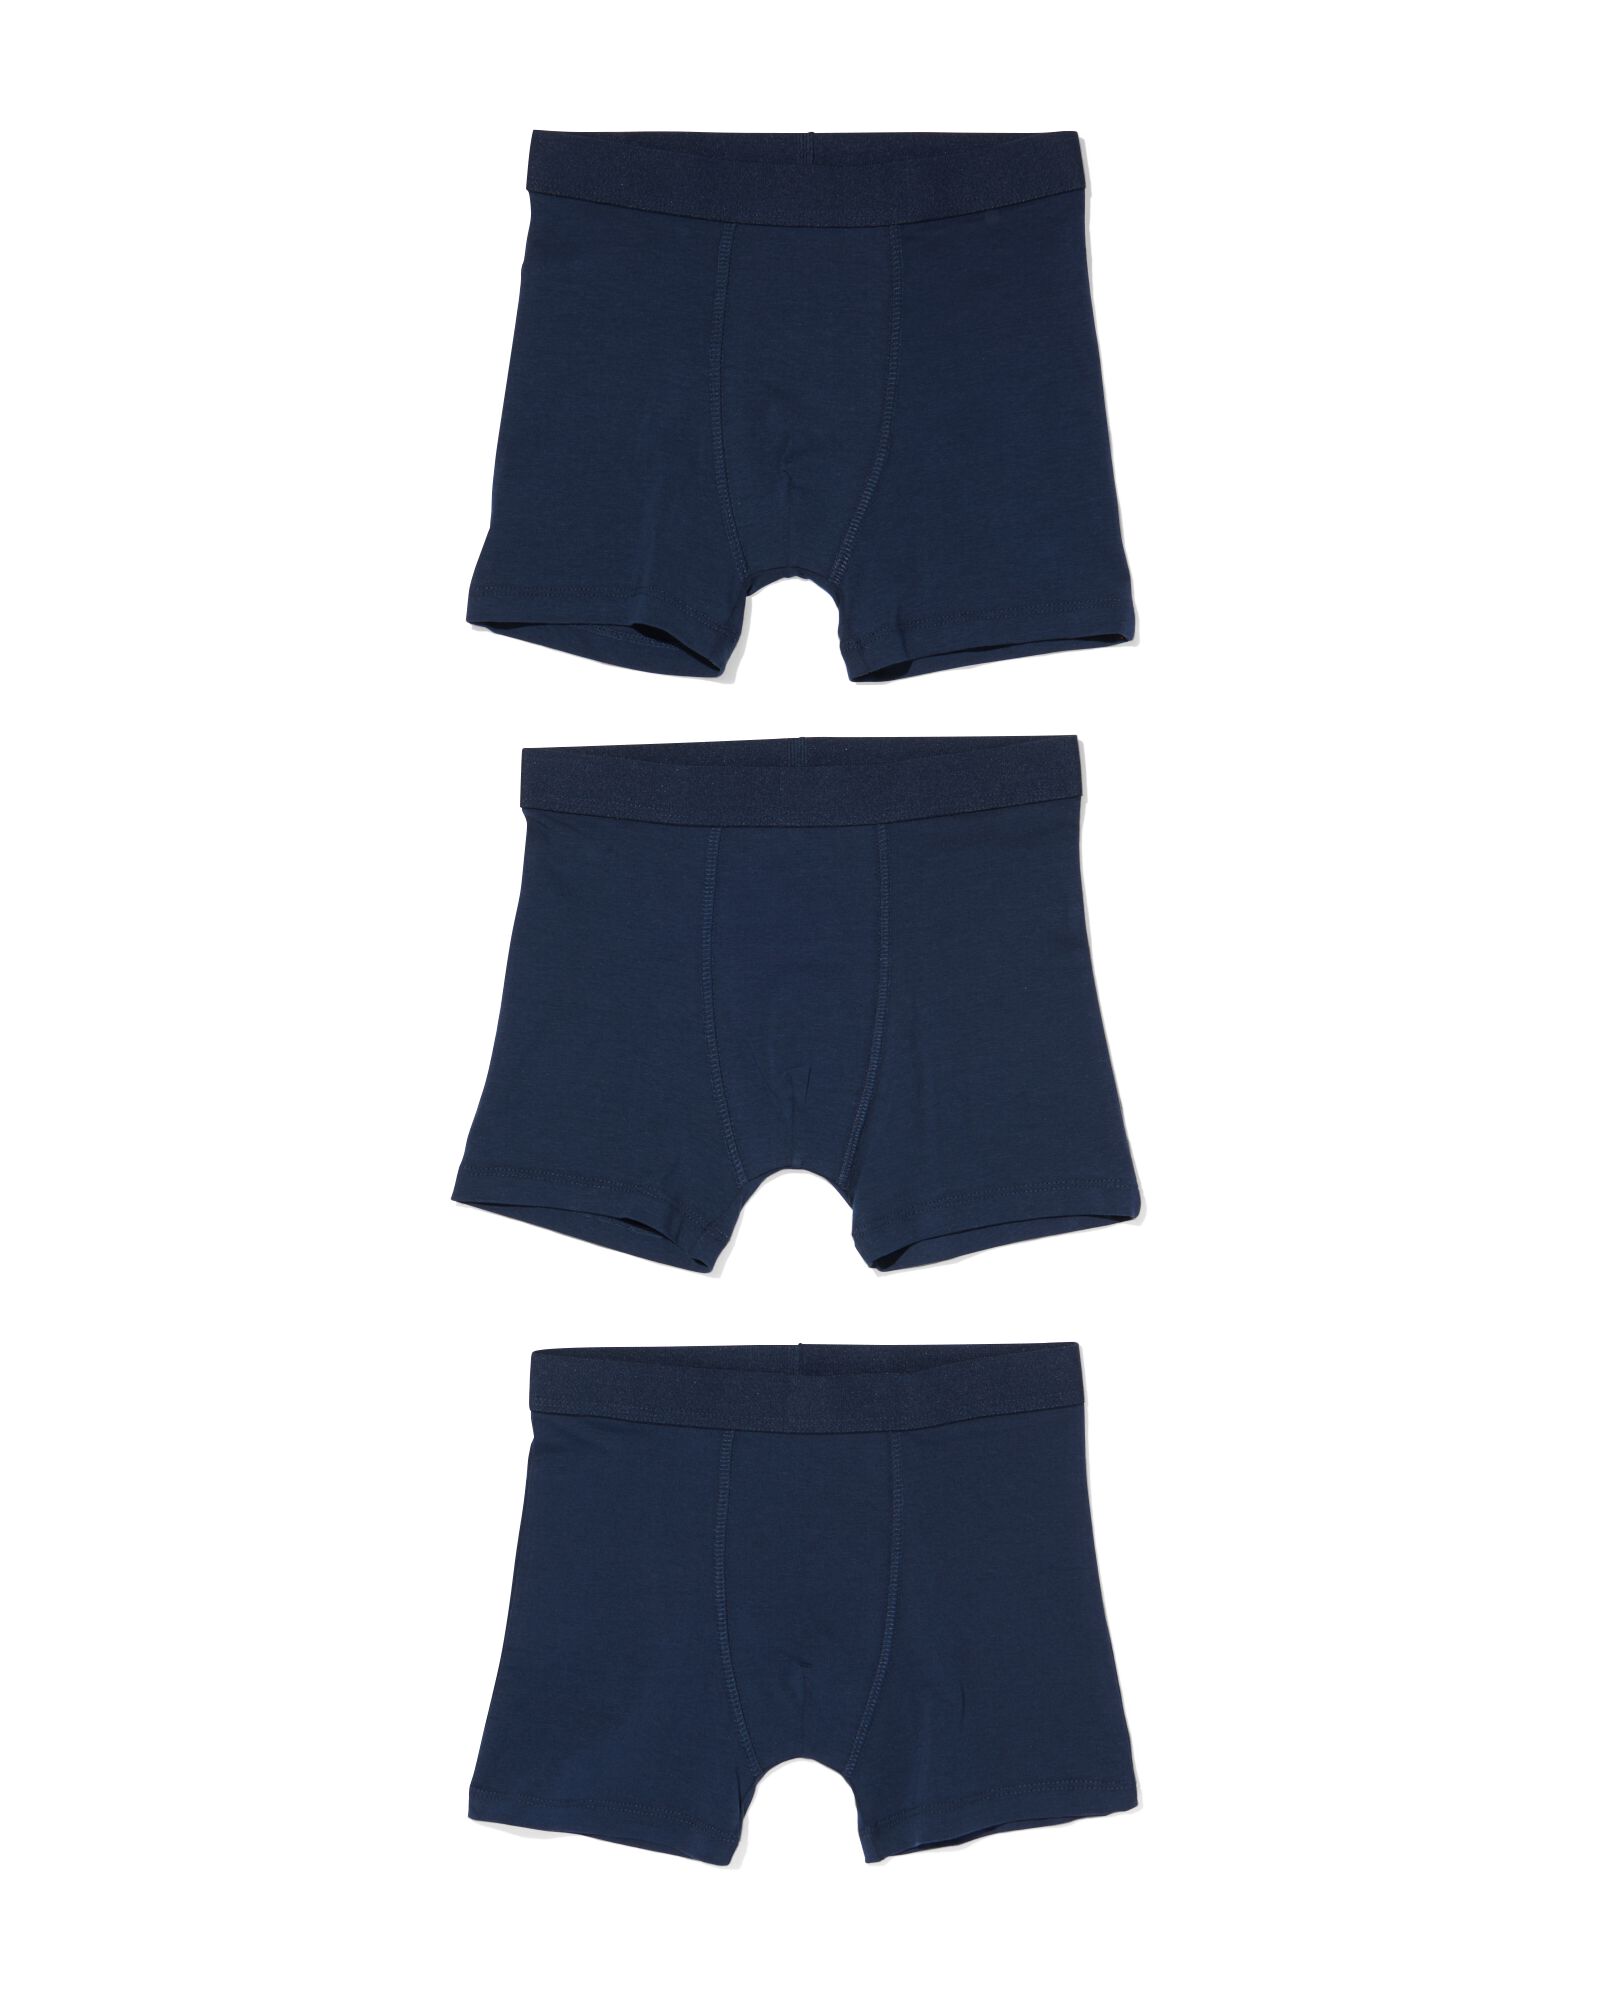 kinder boxers basic stretch katoen - 3 stuks blauw 146/152 - 19200191 - HEMA